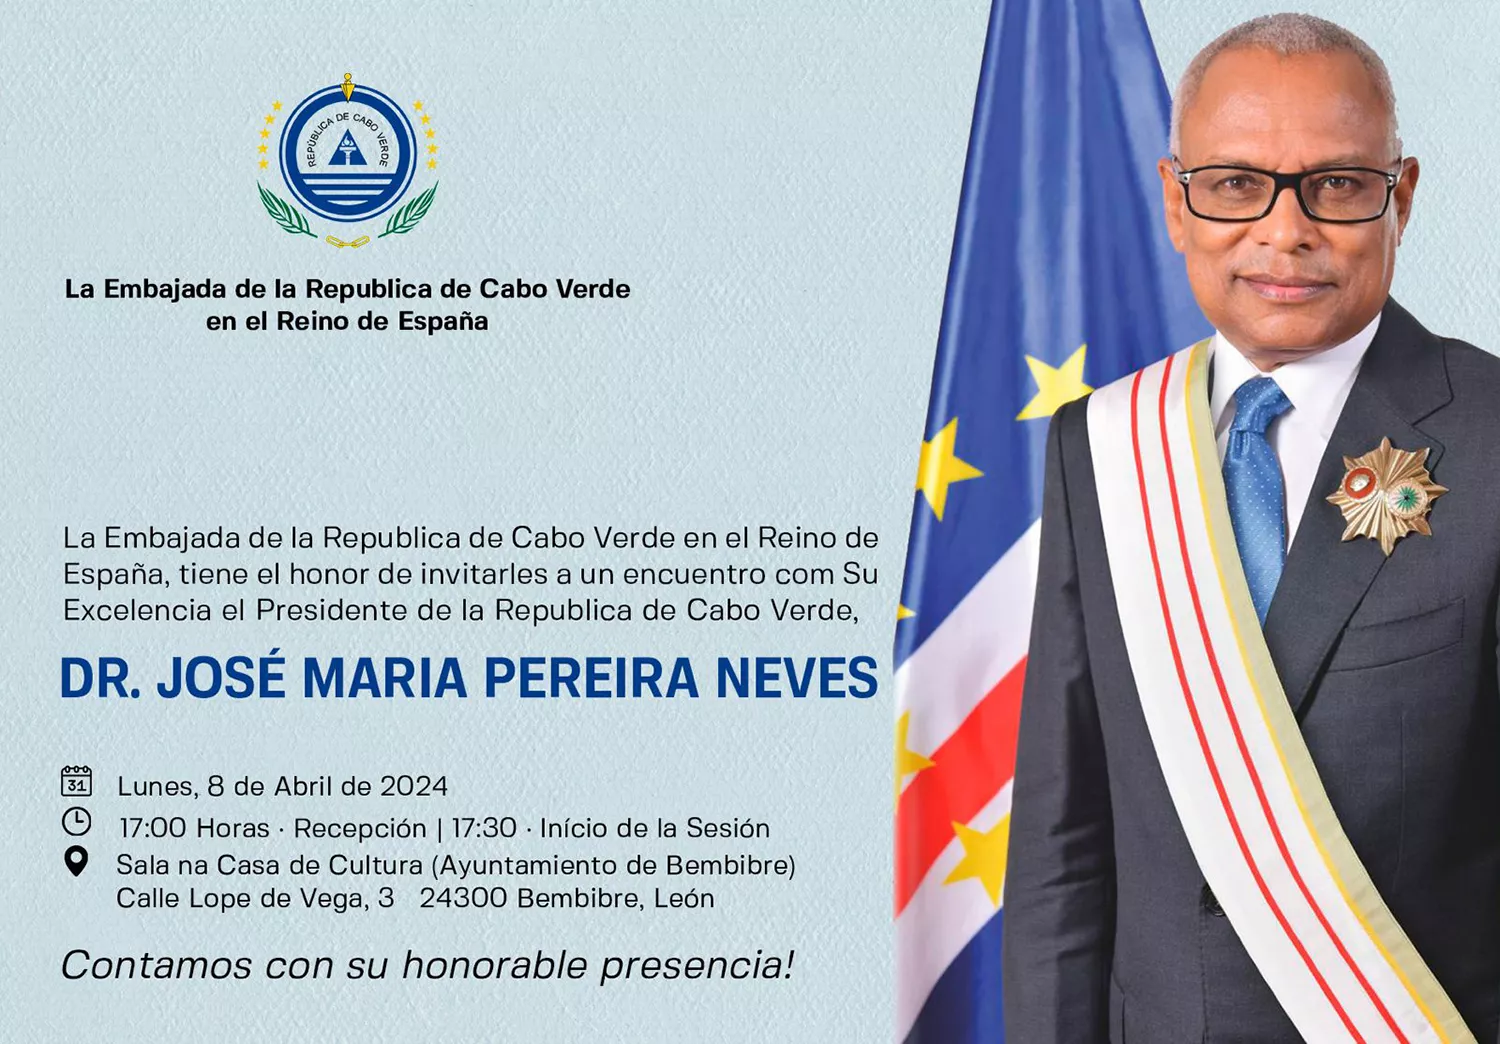 El presidente de Cabo Verde visitará El Bierzo para reunirse con la comunidad de 'cabobercianos'